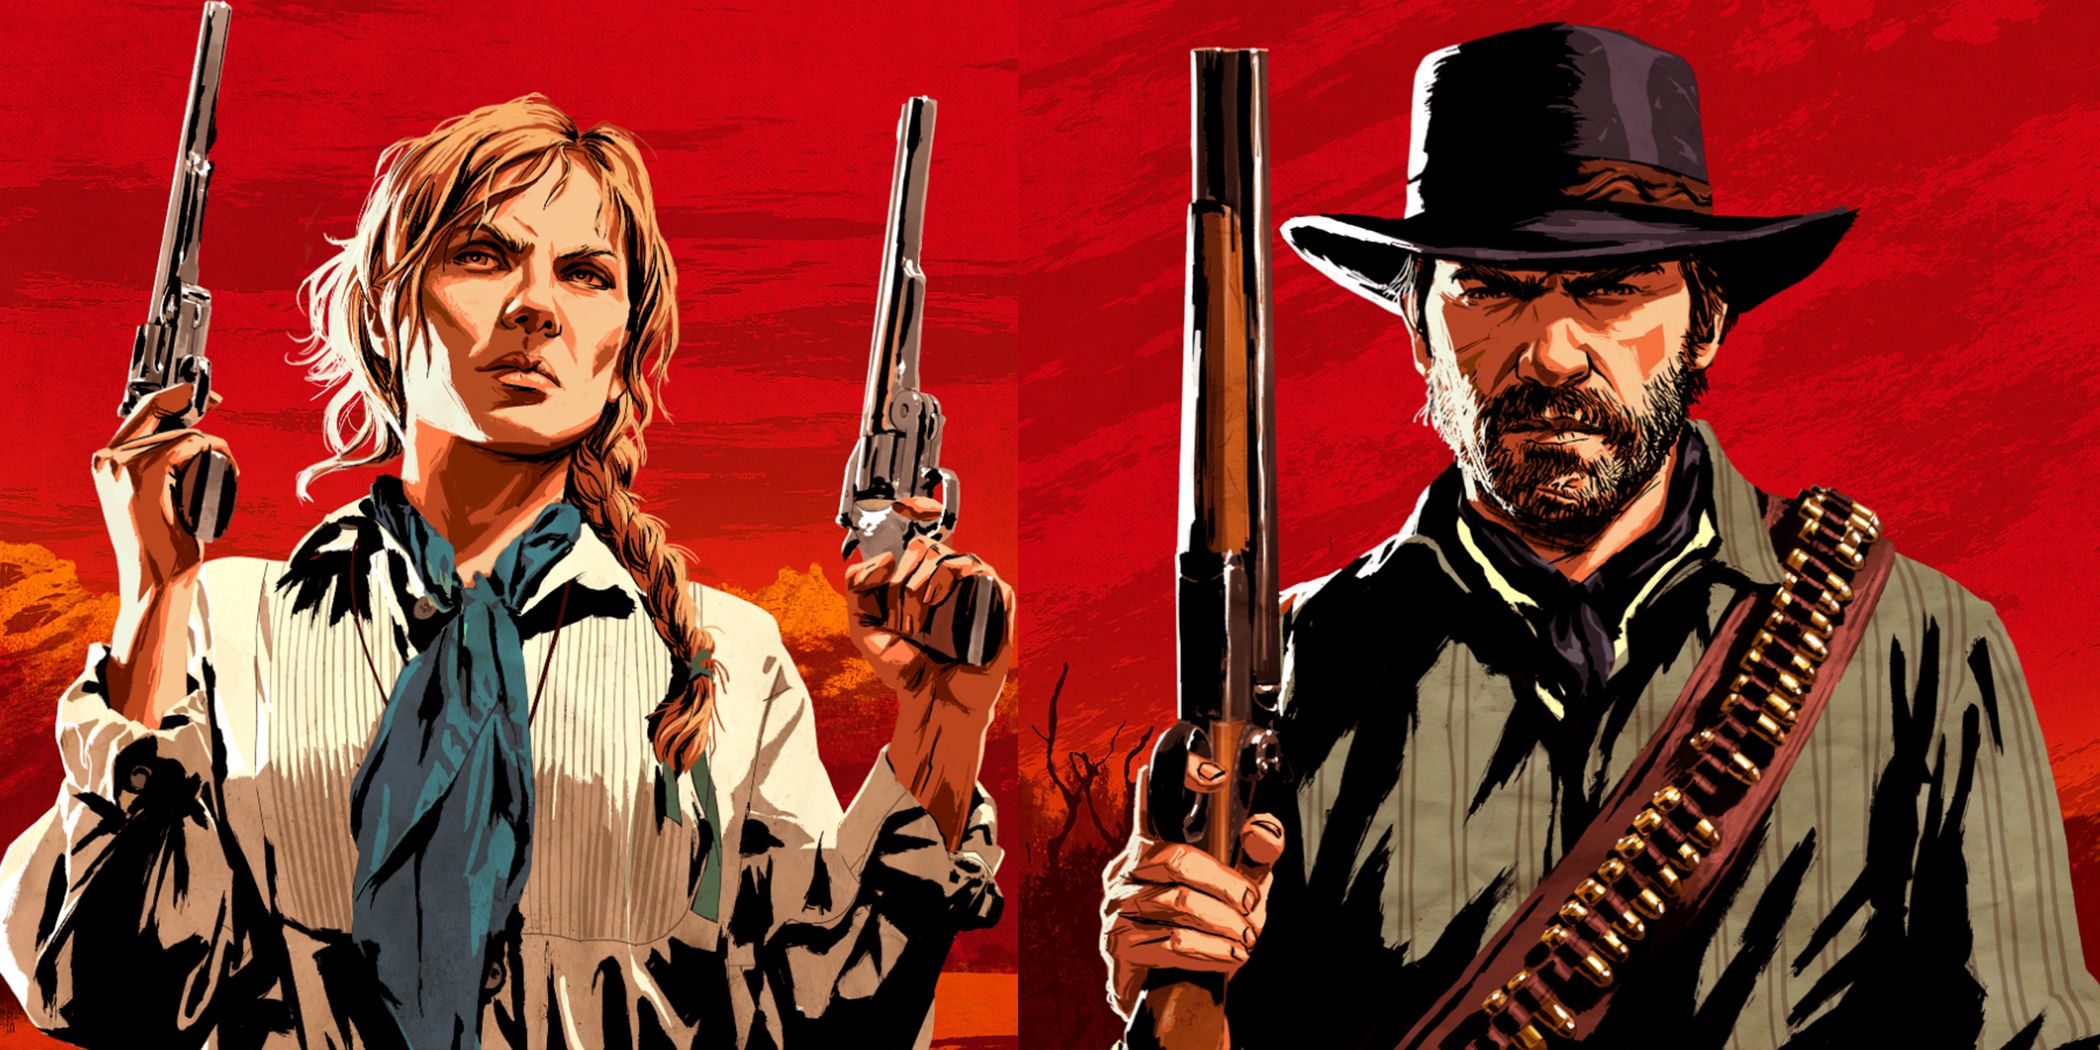 Resuelve el caso del asesino en serie de Red Dead Redemption 2